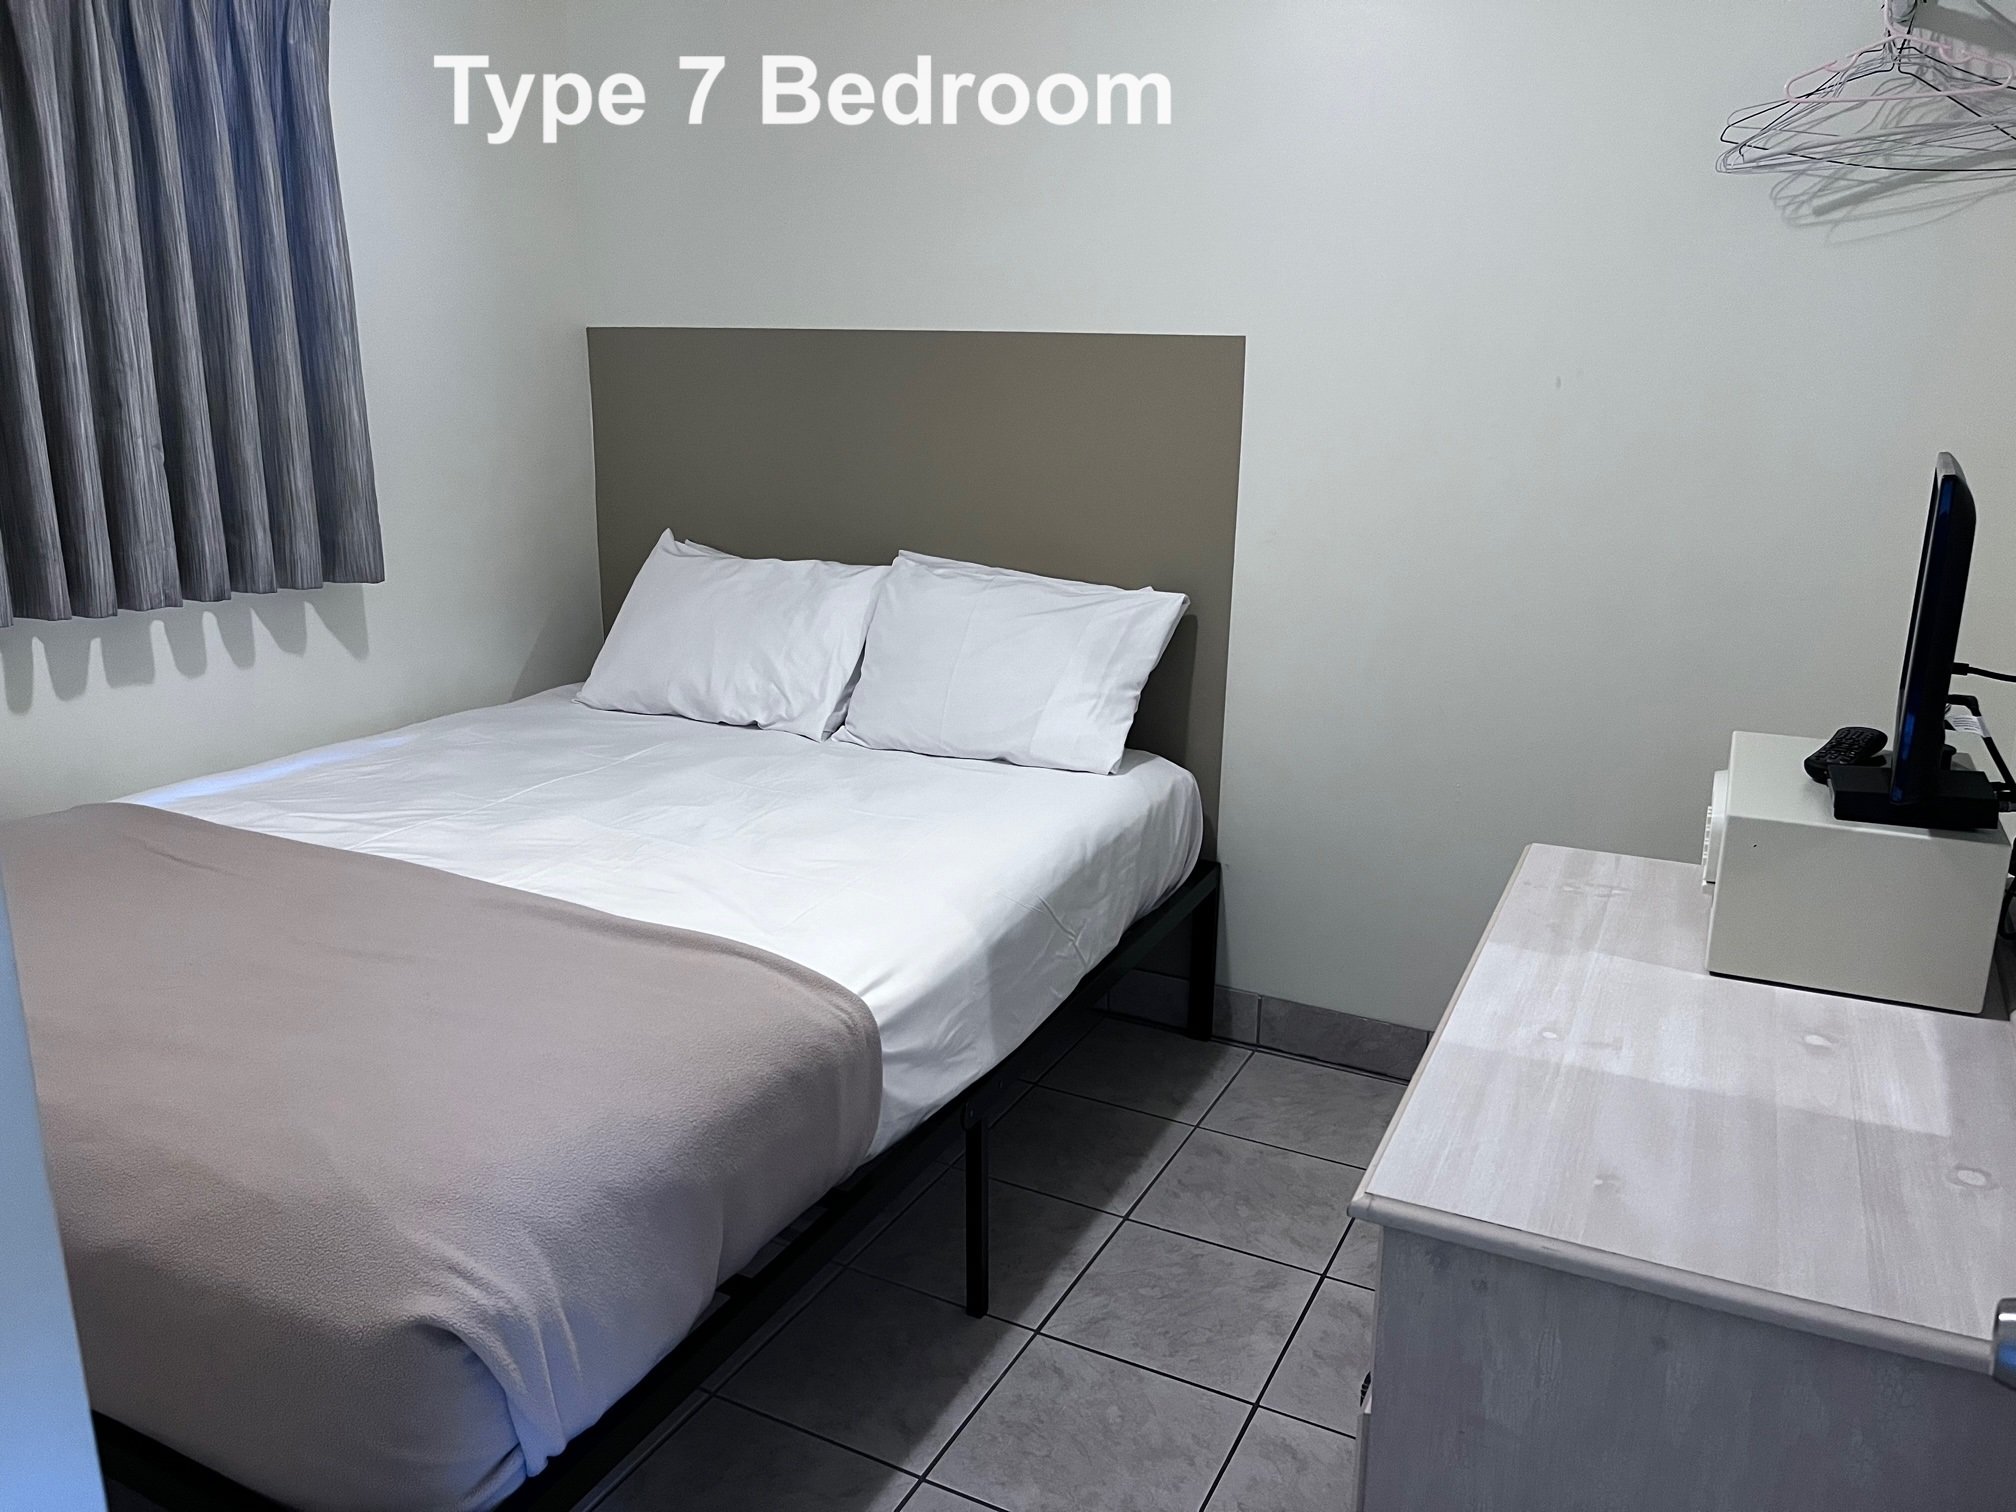 Type 7 bedroom.jpg